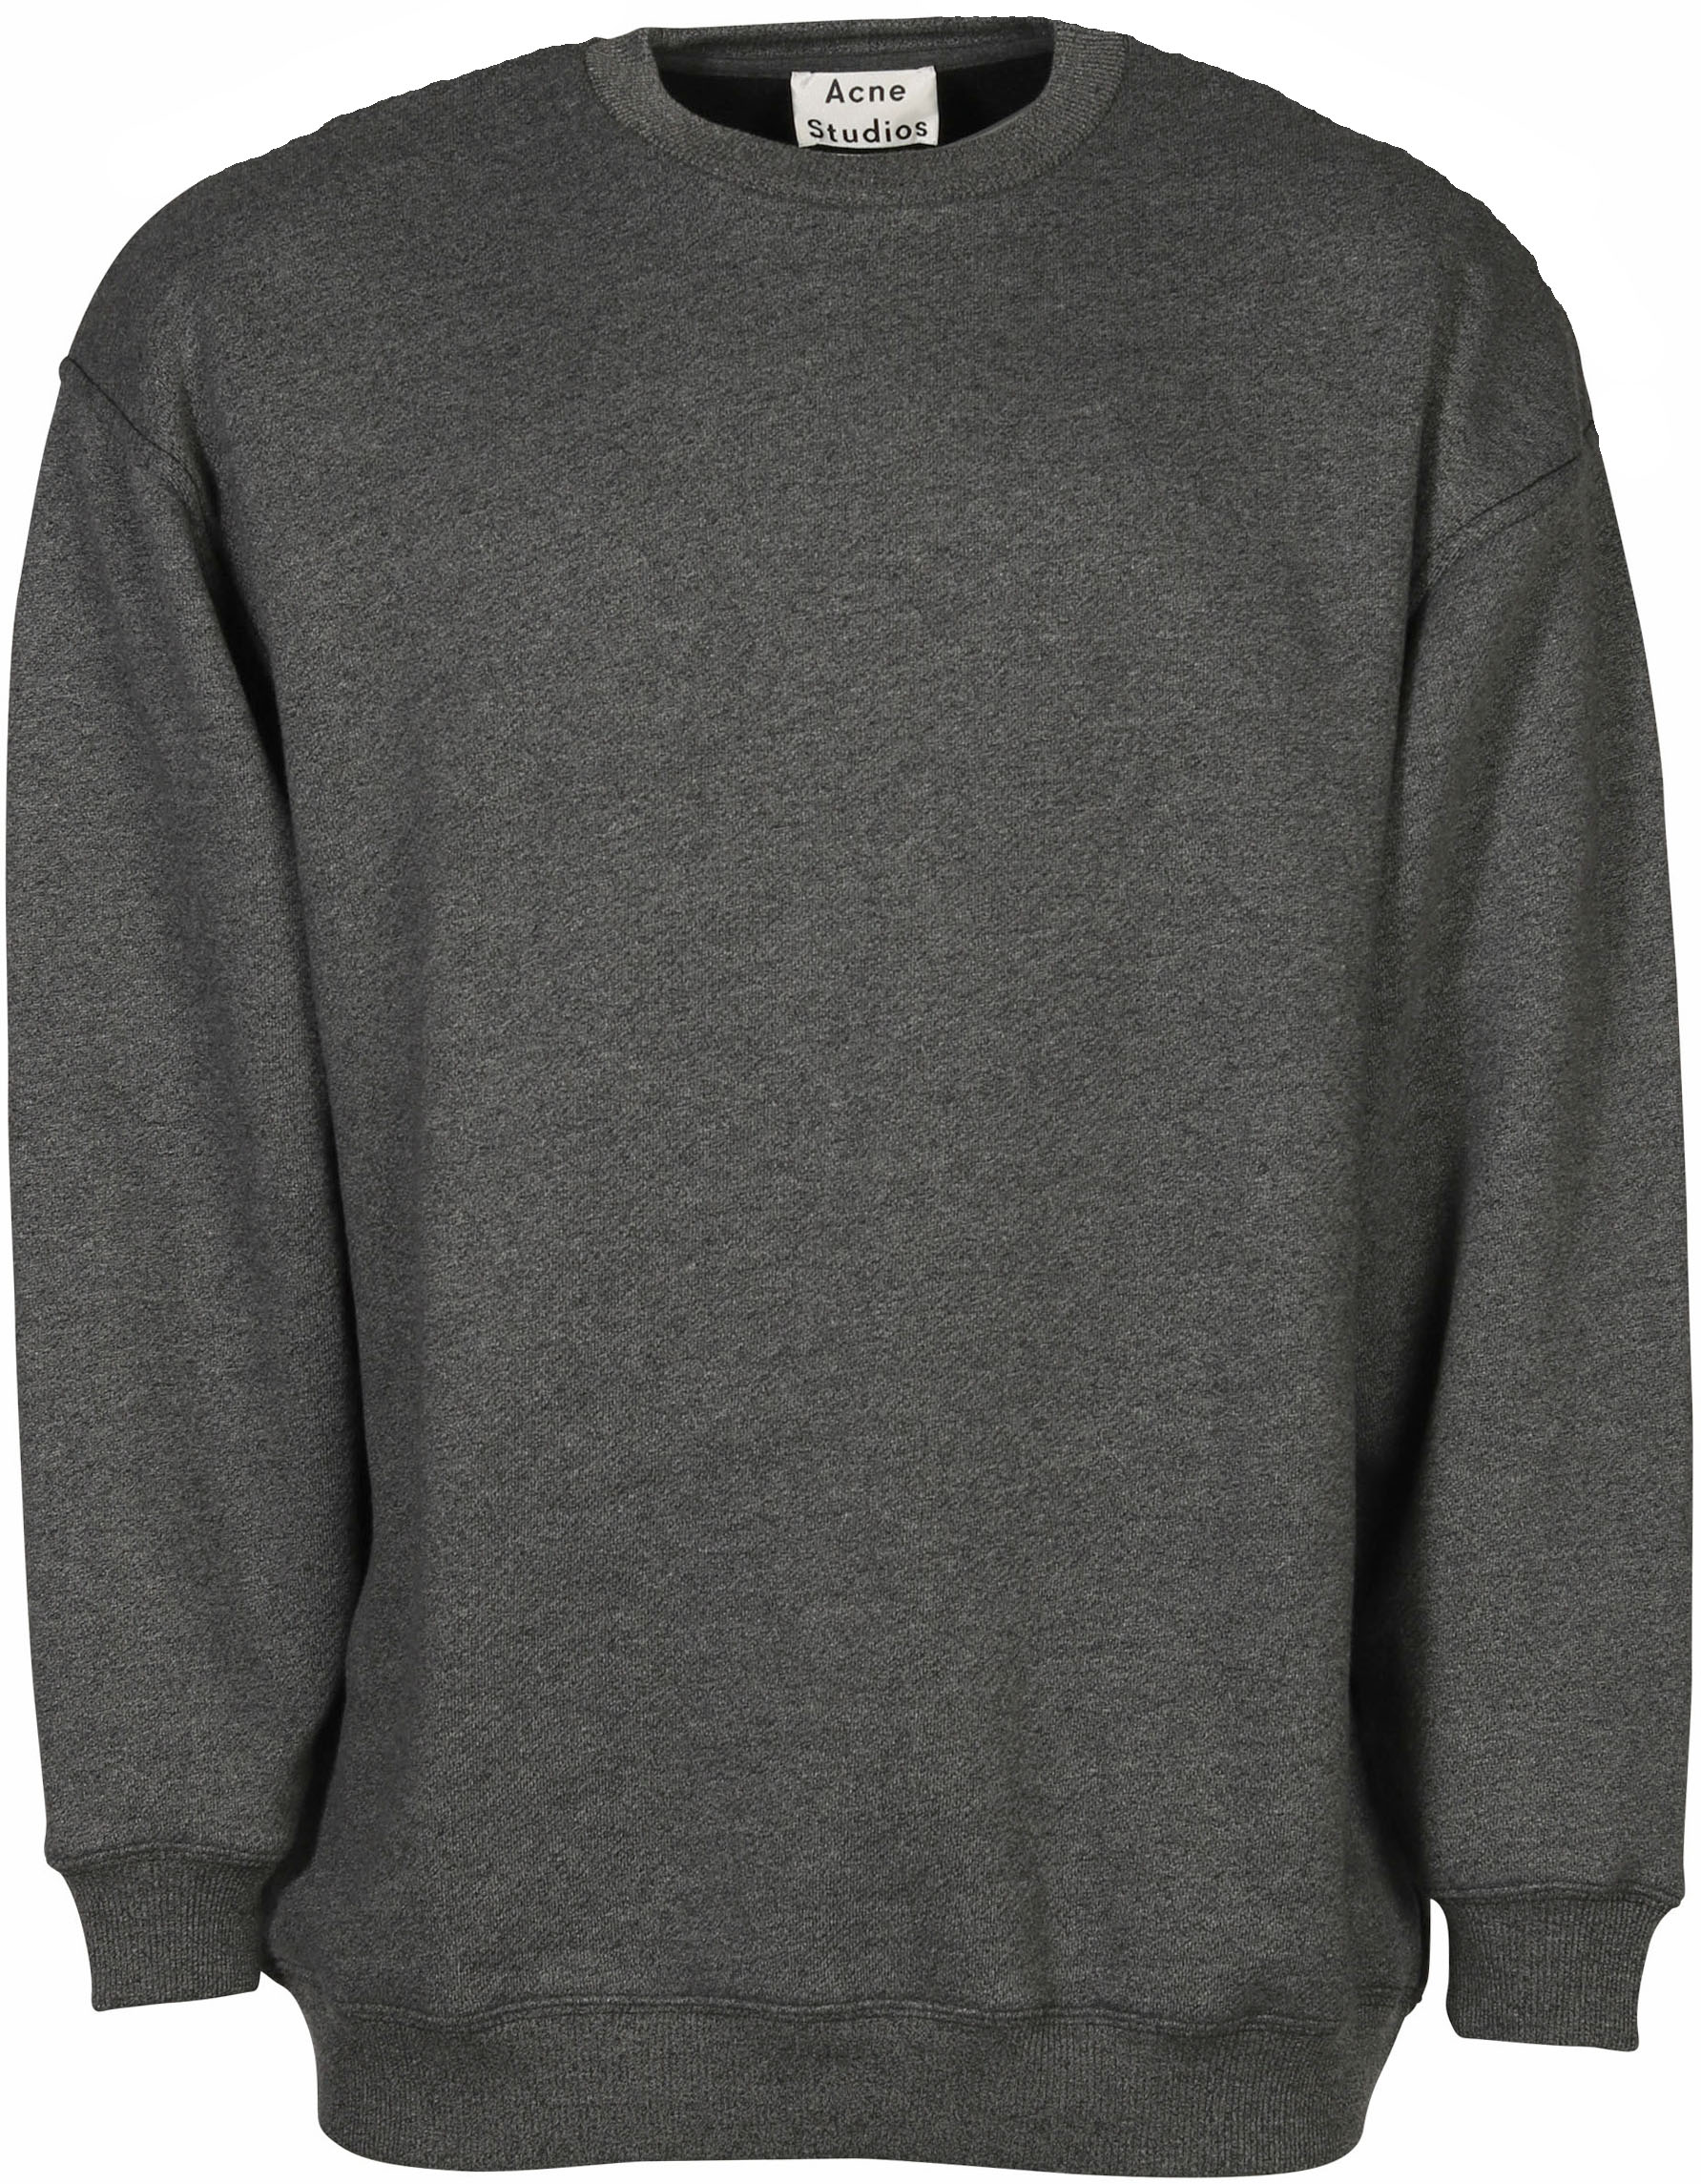 Acne Studios Sweatshirt Fiene Reverse Label Black S